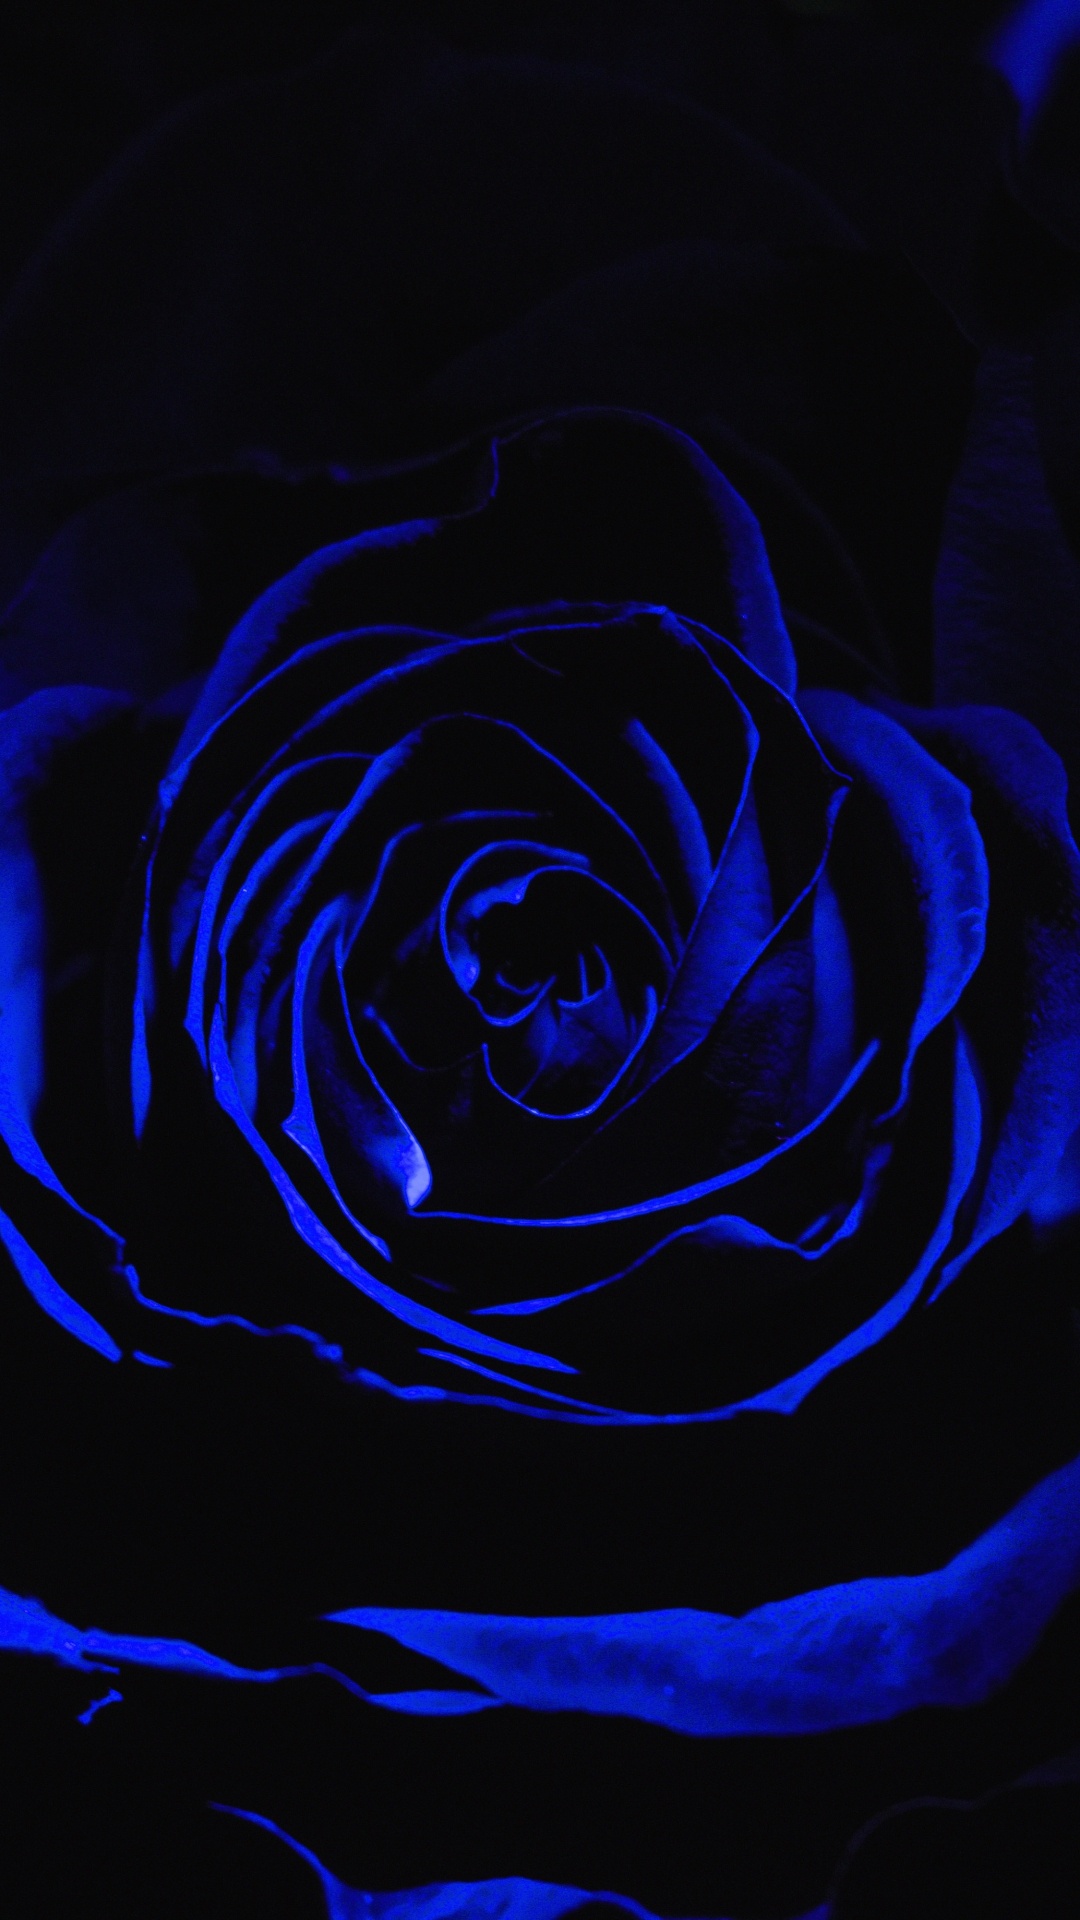 Rosa Azul en Fotografía de Cerca. Wallpaper in 1080x1920 Resolution